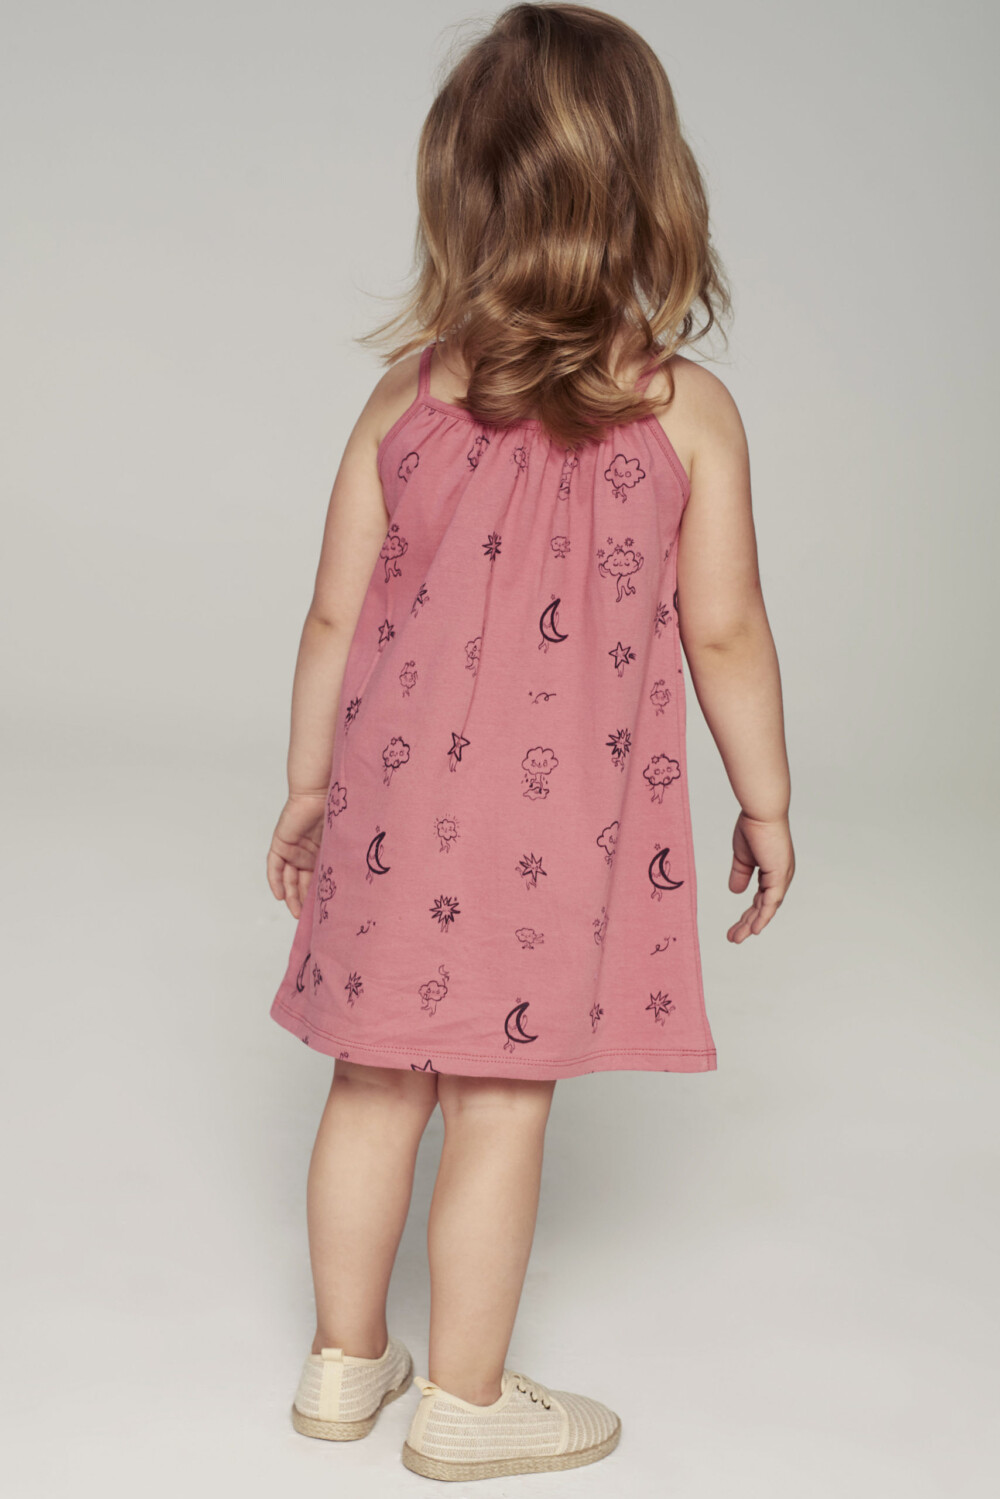 Sukienka dla dziecka na ramiaczkach rozowa Chmury tyl scaled 1